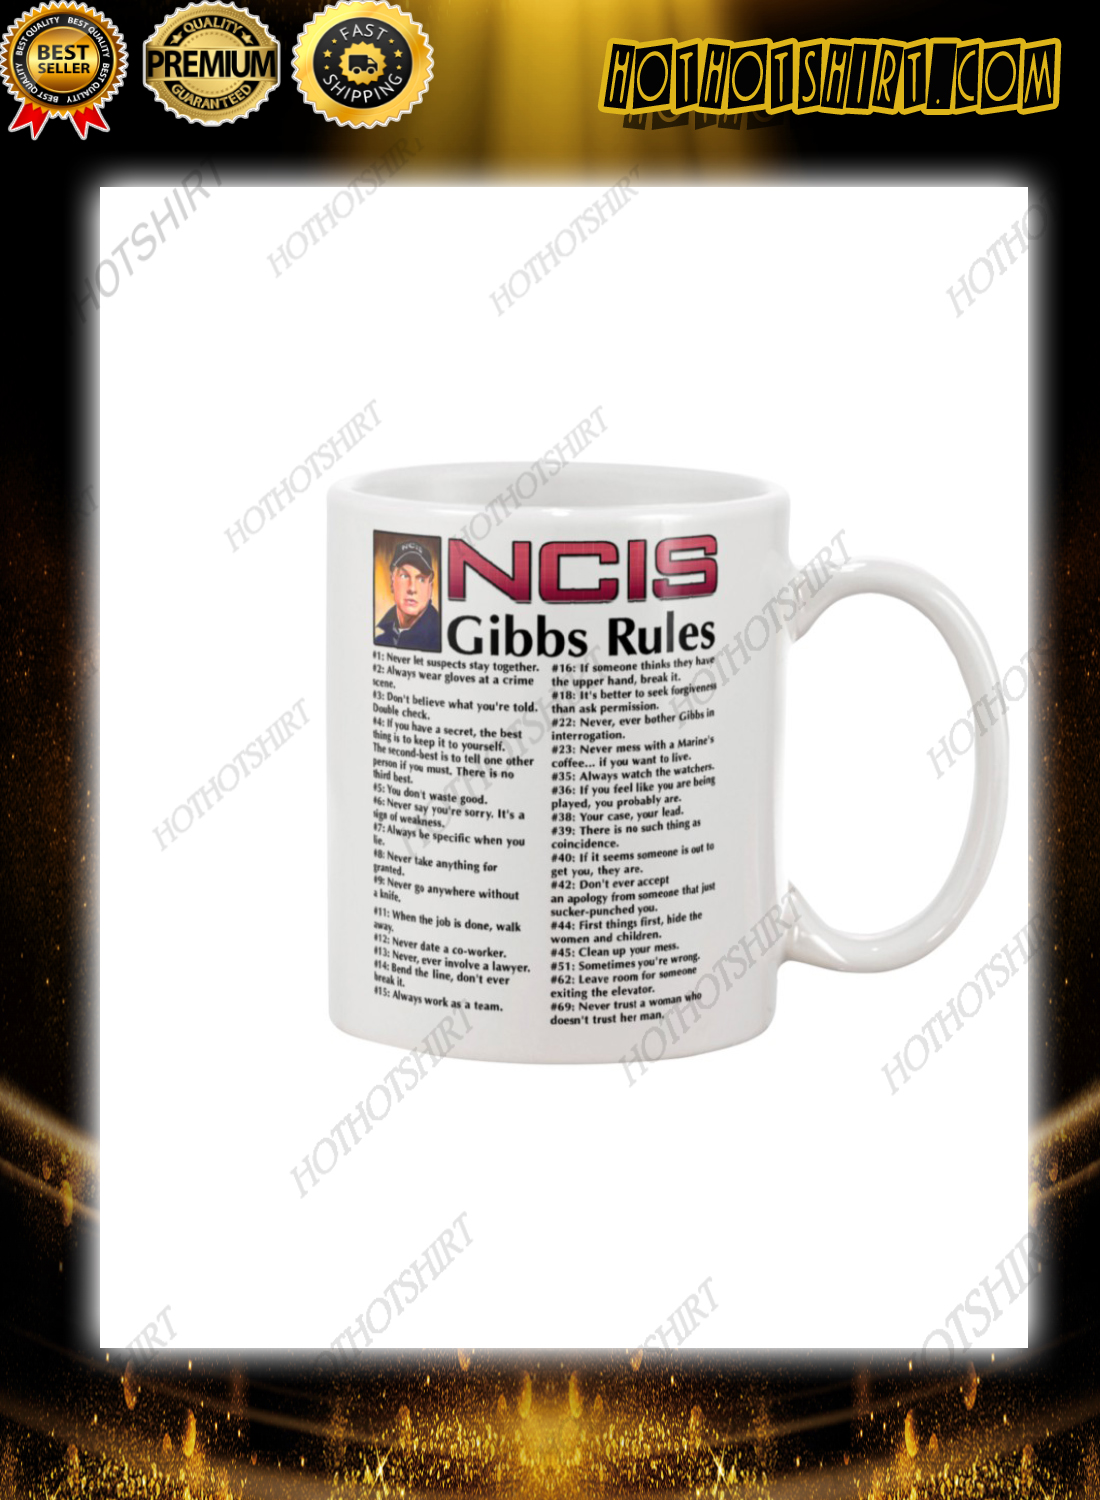 NCIS gibbs rules mug